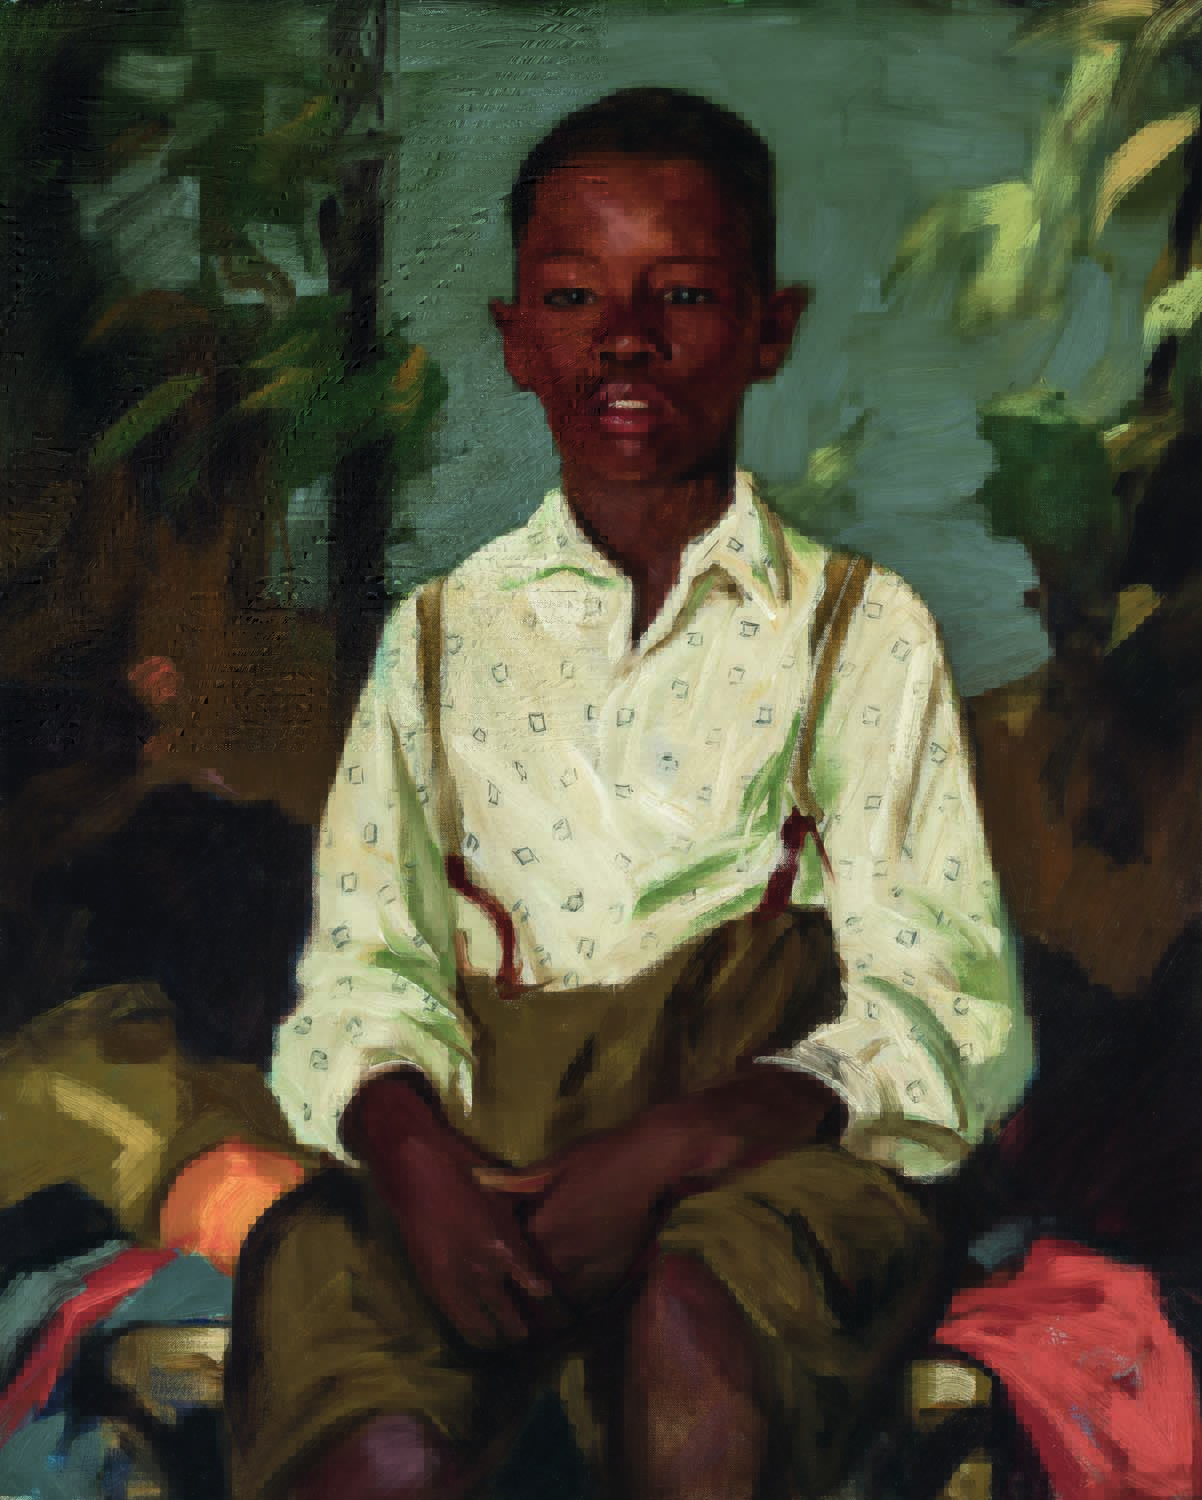 Menino negro com camisa branca e calça marrom posa sentado em pintura.